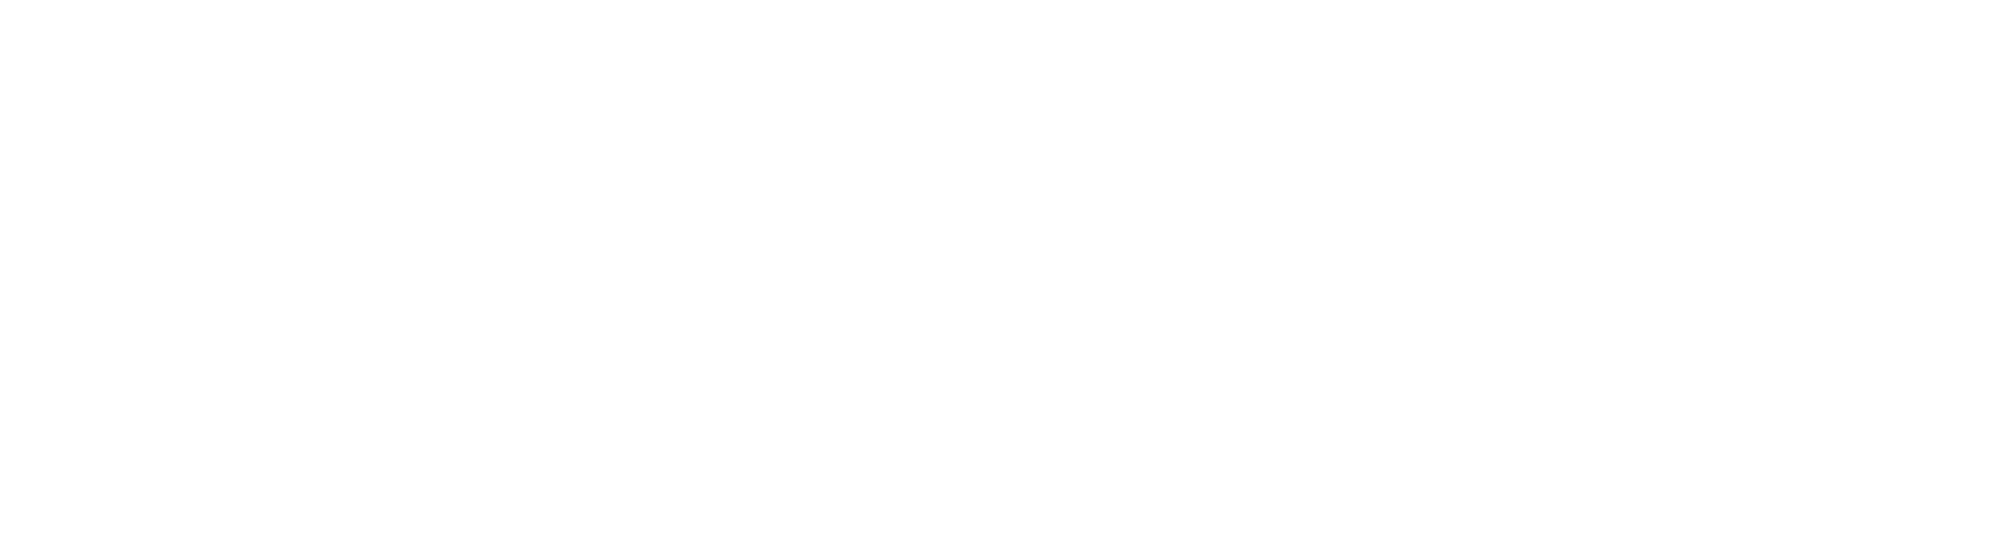 日本通信eSIM「超」入門ガイド